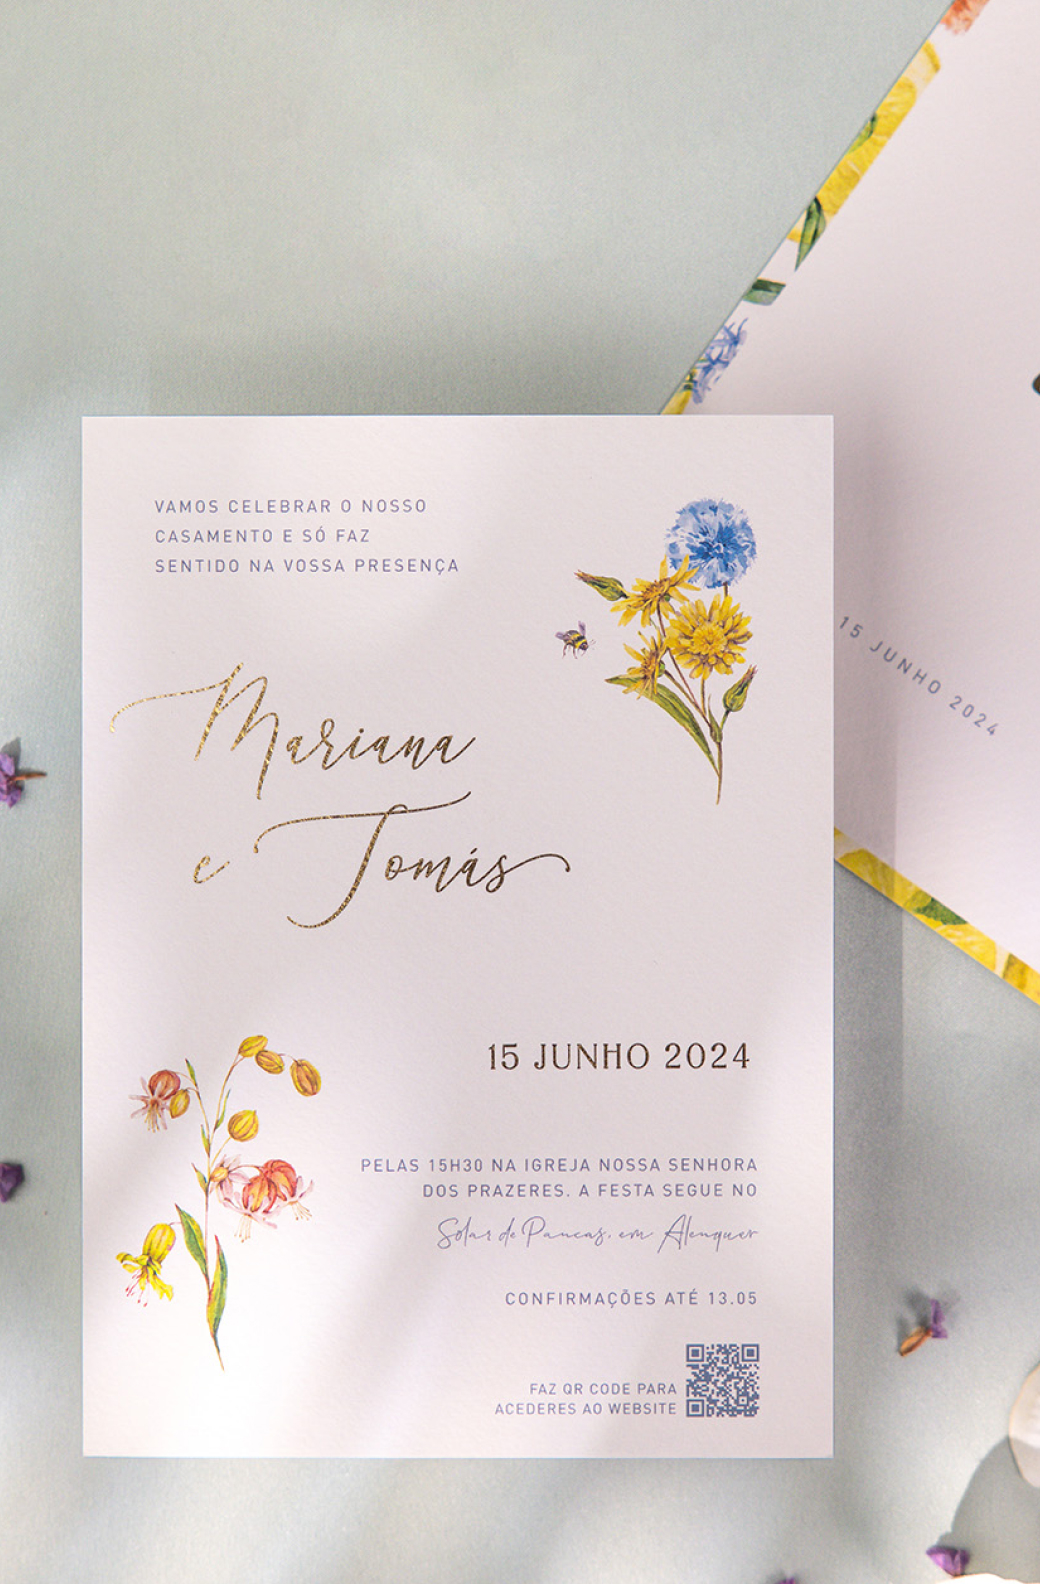 <a style="color:white;" href="https://pergaminho.design/convites-de-casamento/convites-florais/">Convites Florais</a>